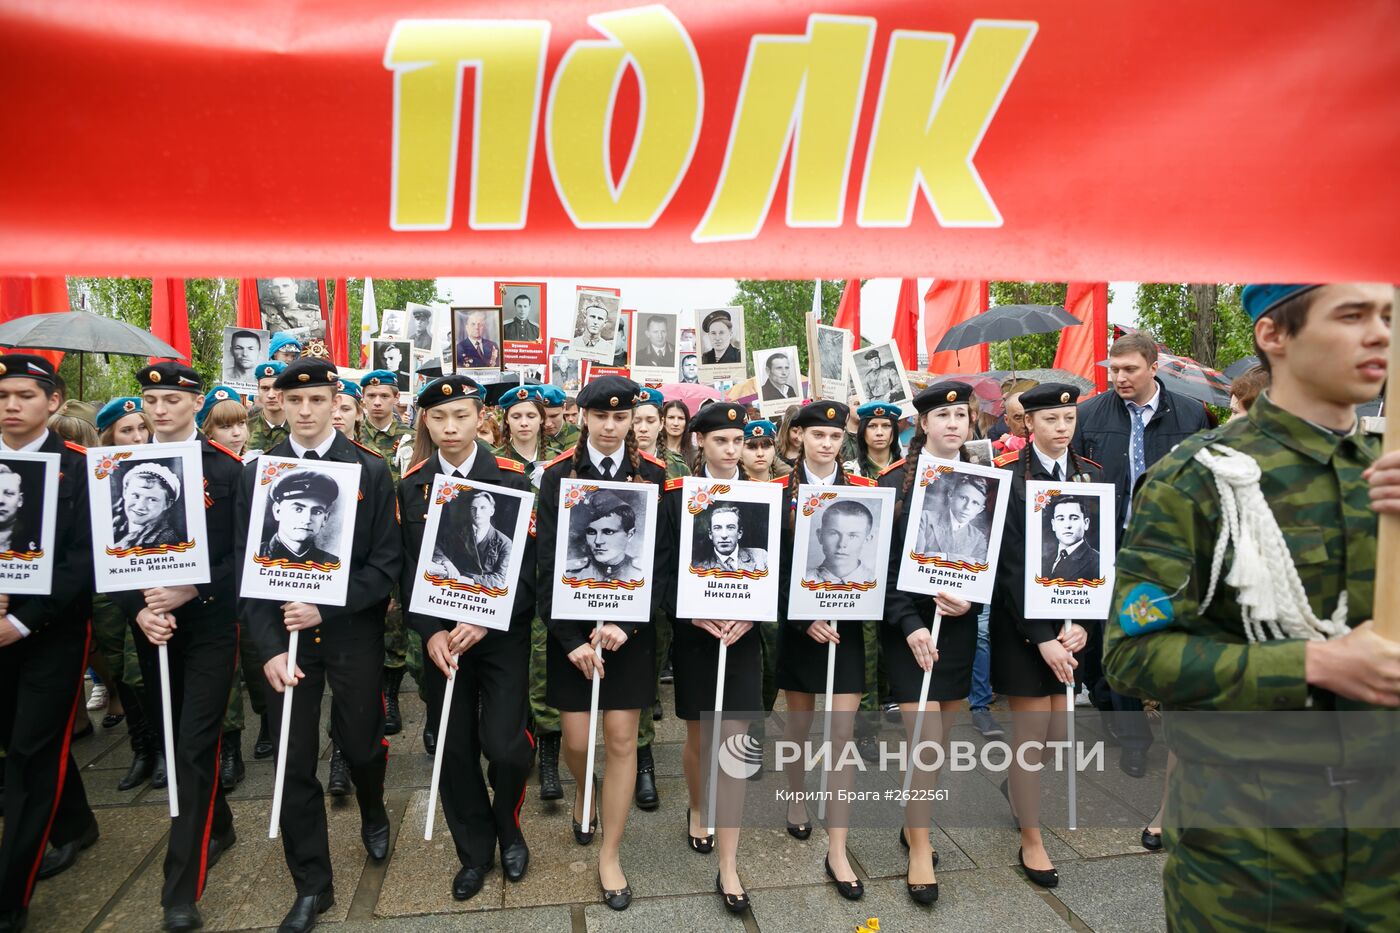 Празднование 70-летия Победы в Великой Отечественной войне 1941-1945 годов в городе-герое Волгограде